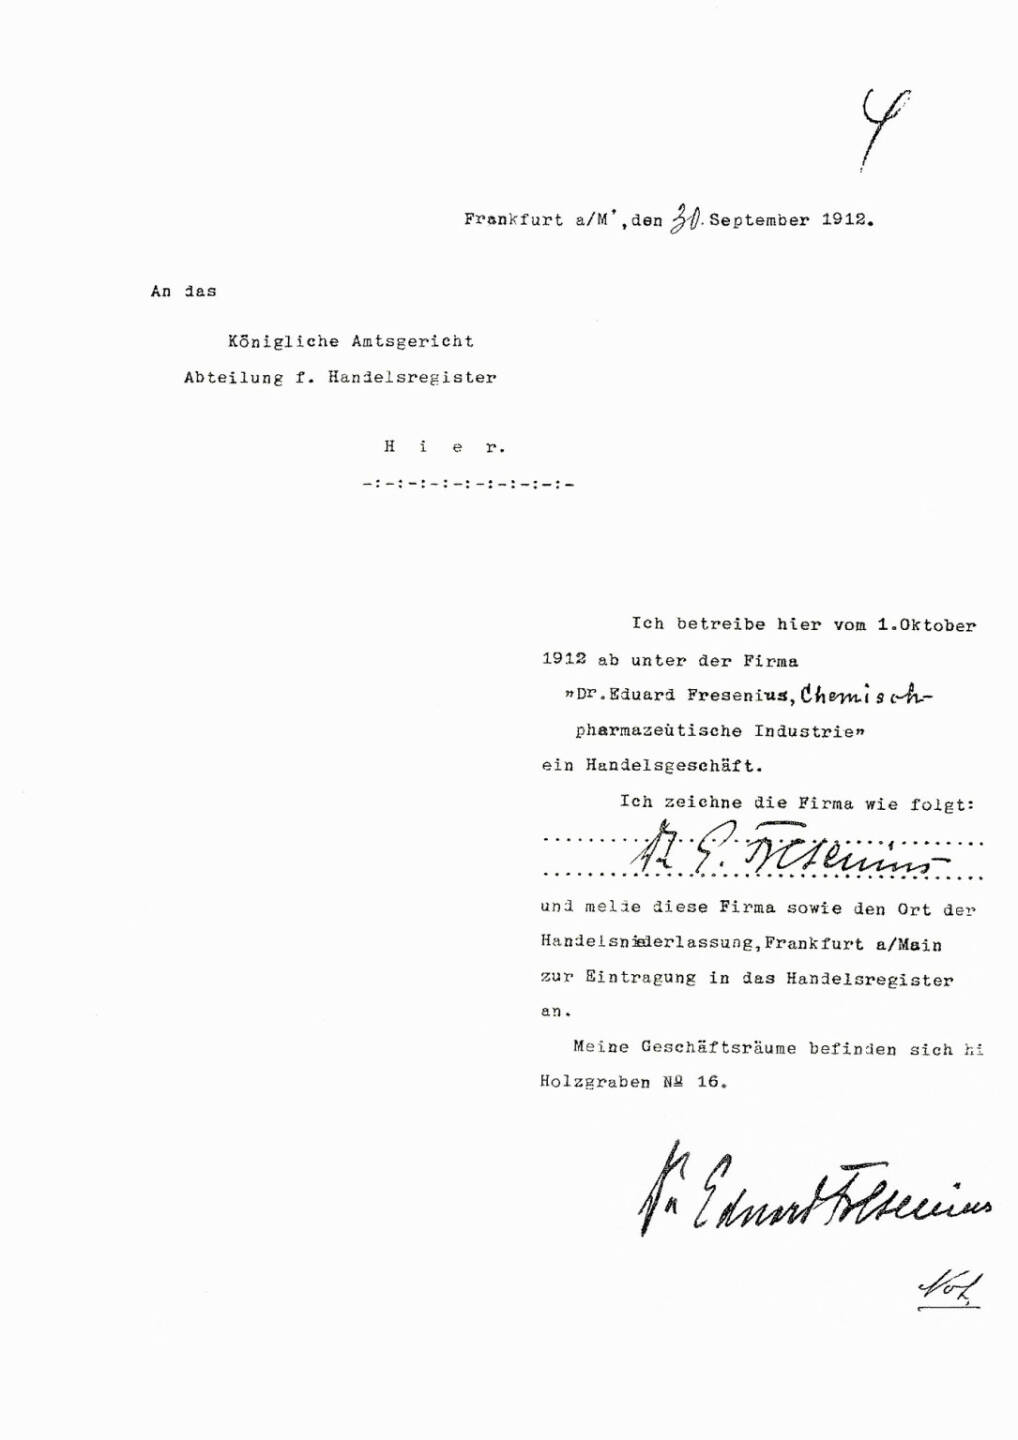 Anmeldung zur Eintragung der „Dr. Eduard Fresenius chemisch-pharmazeutische Industrie KG“ in das Handelsregister der Stadt Frankfurt/Main zum 1. Oktober 1912